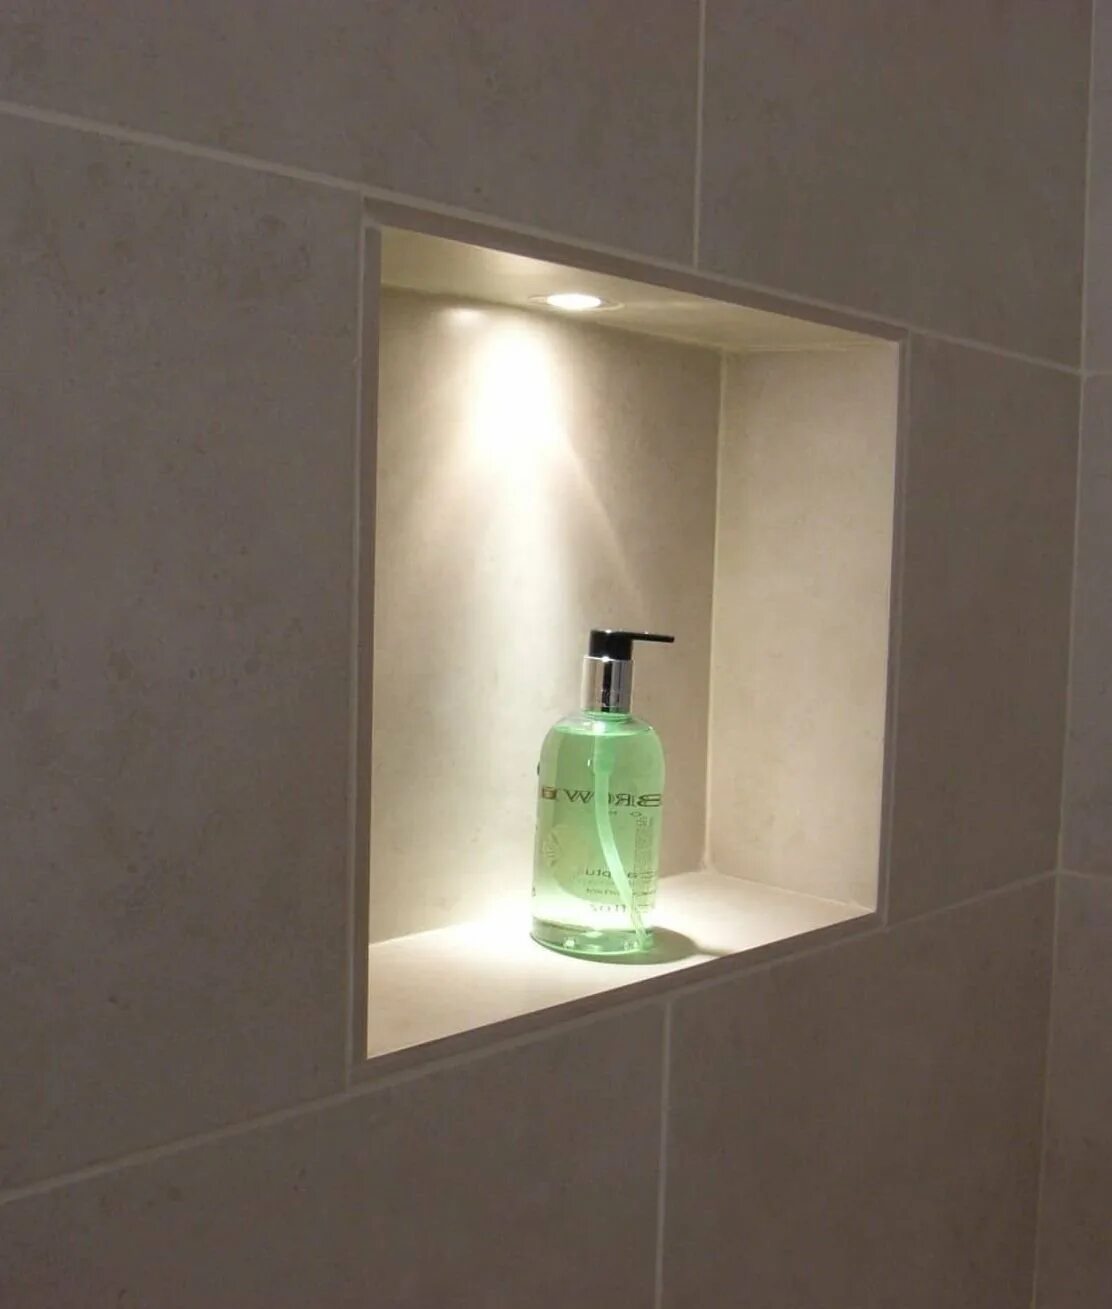 Полочки в ванной с подсветкой. Подсветка Нили в ванной. Подсветка ниш в ванной. Полки с подсветкой в ванной. Ниша в ванной с подсветкой.